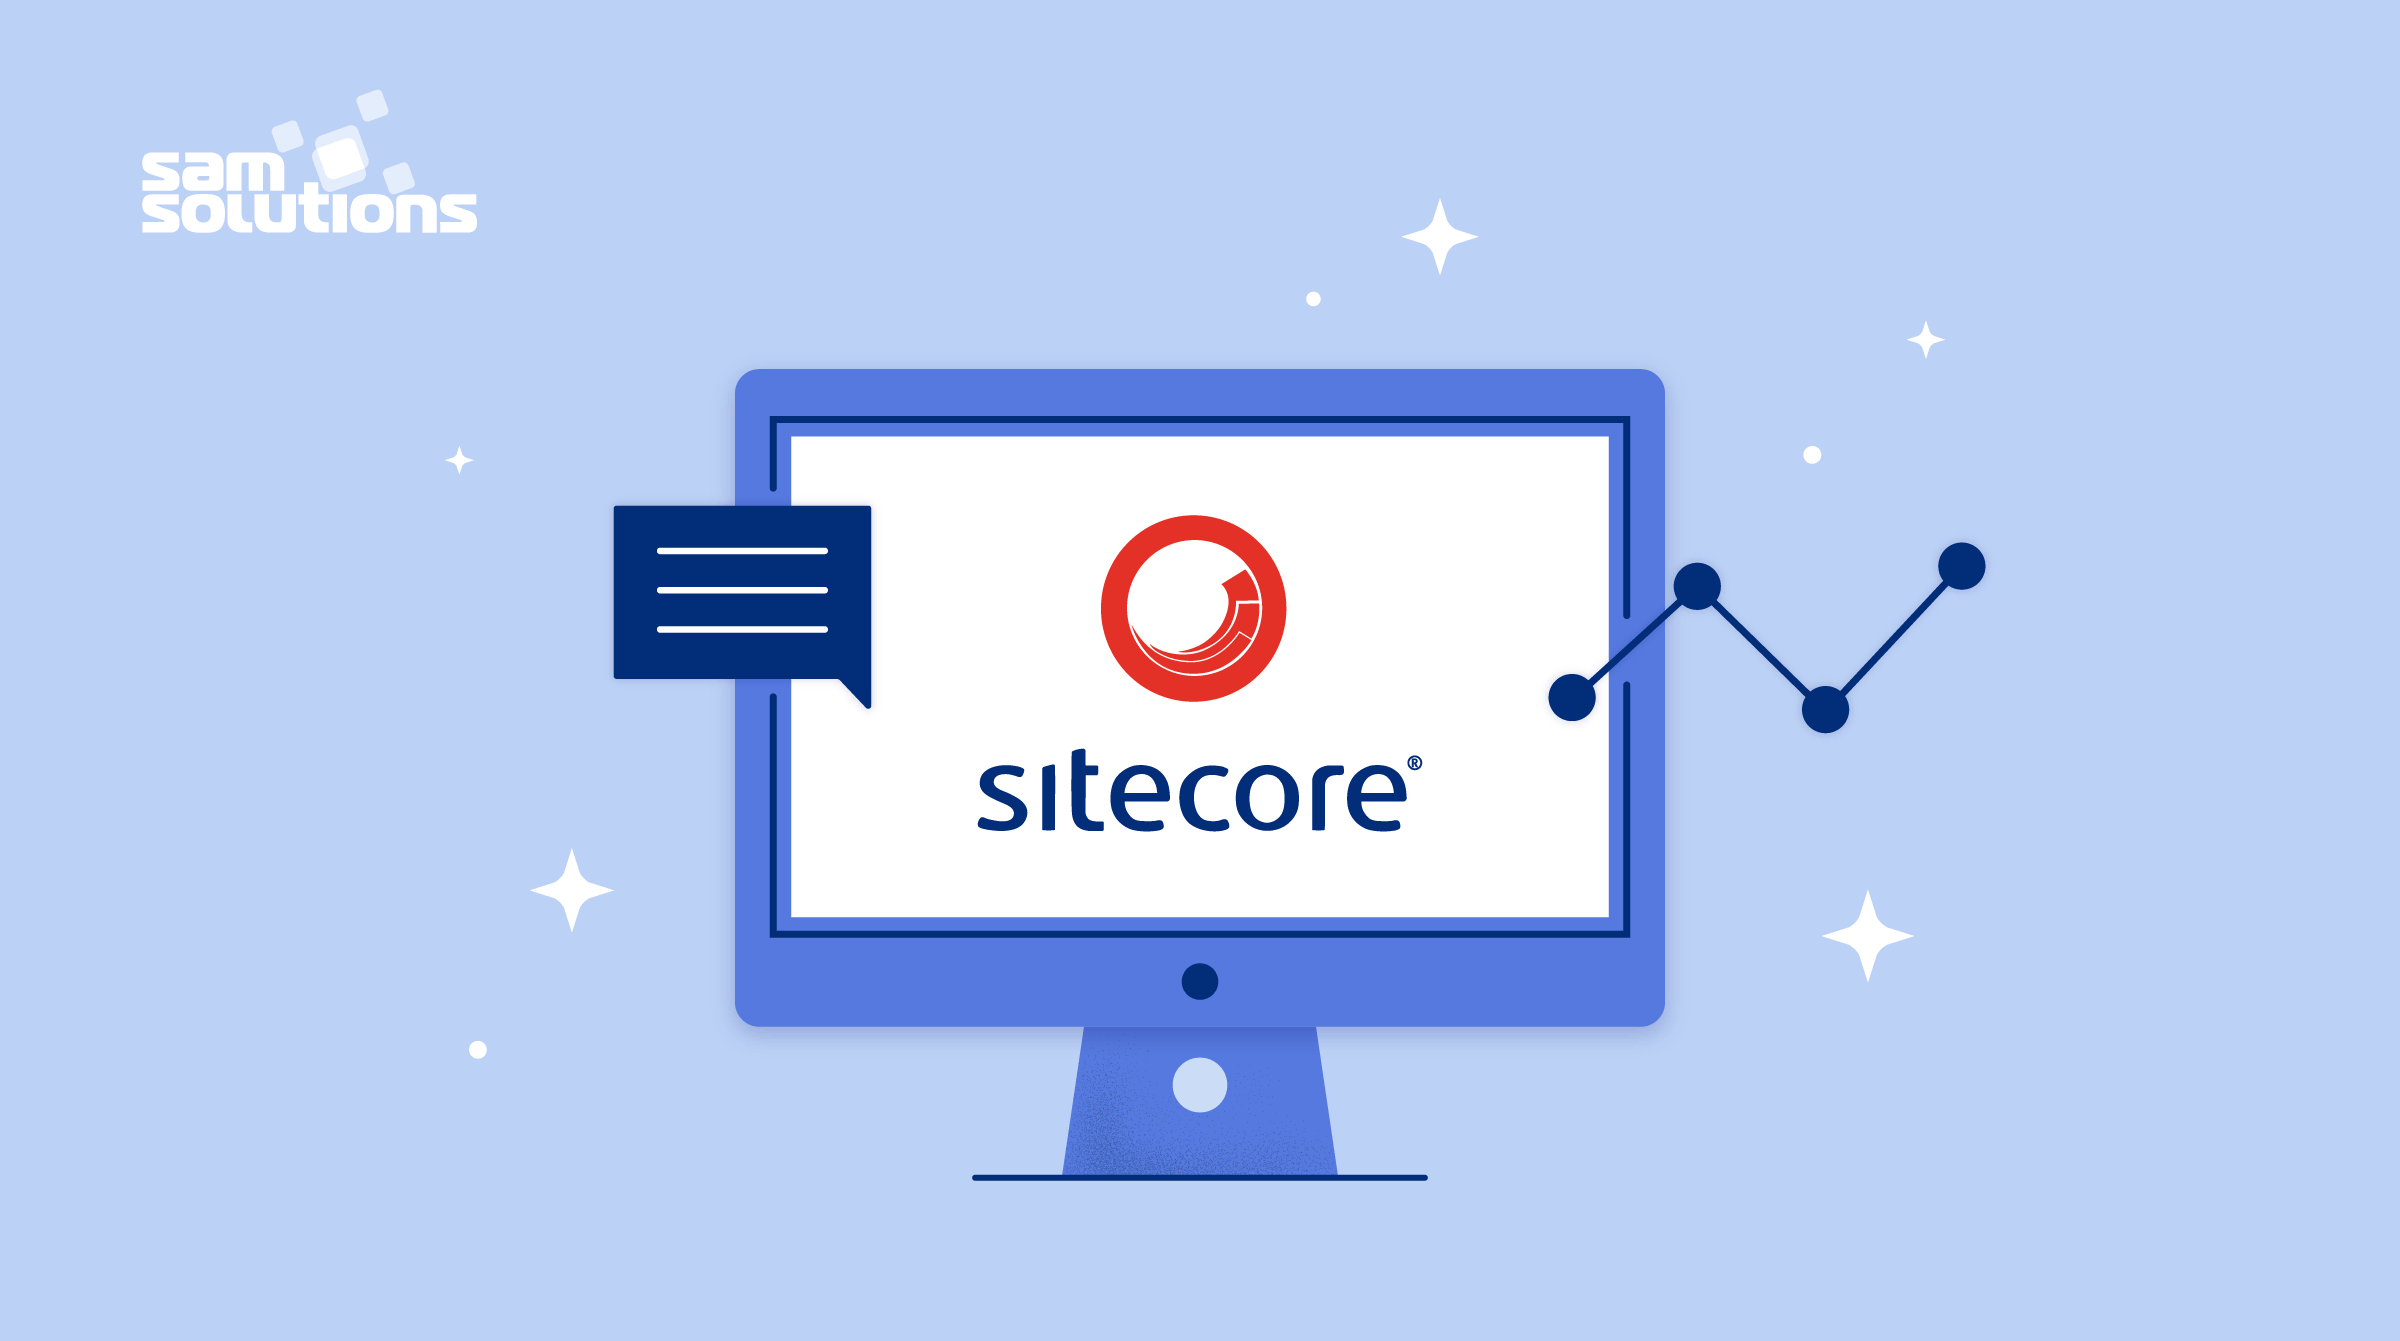 sitecore visit definition